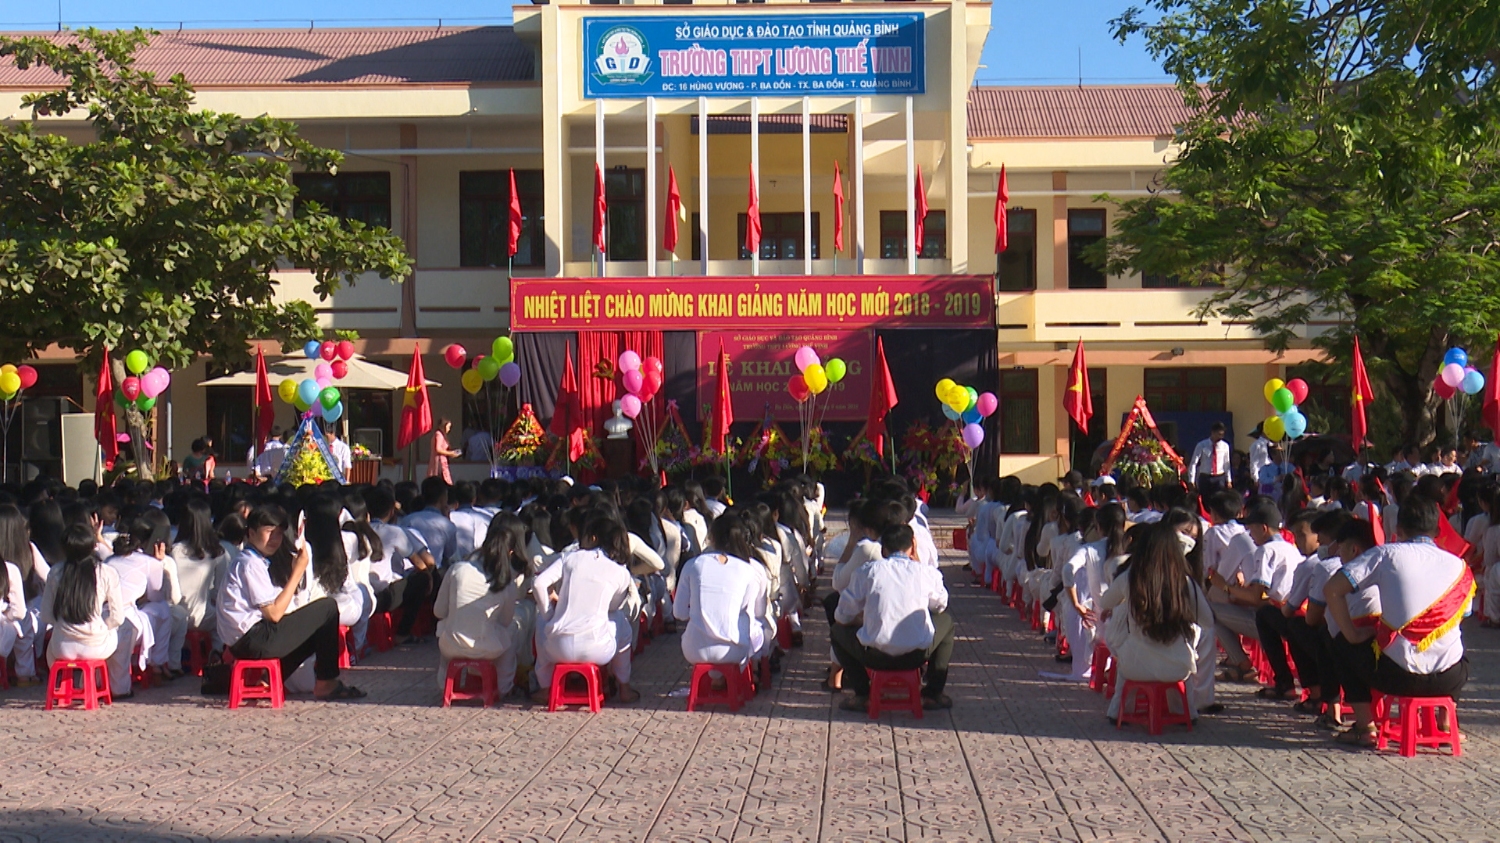 Lãnh đạo thị xã Ba Đồn dự lễ khai giảng năm học mới 2018-2019 tại các trường học trên địa bàn